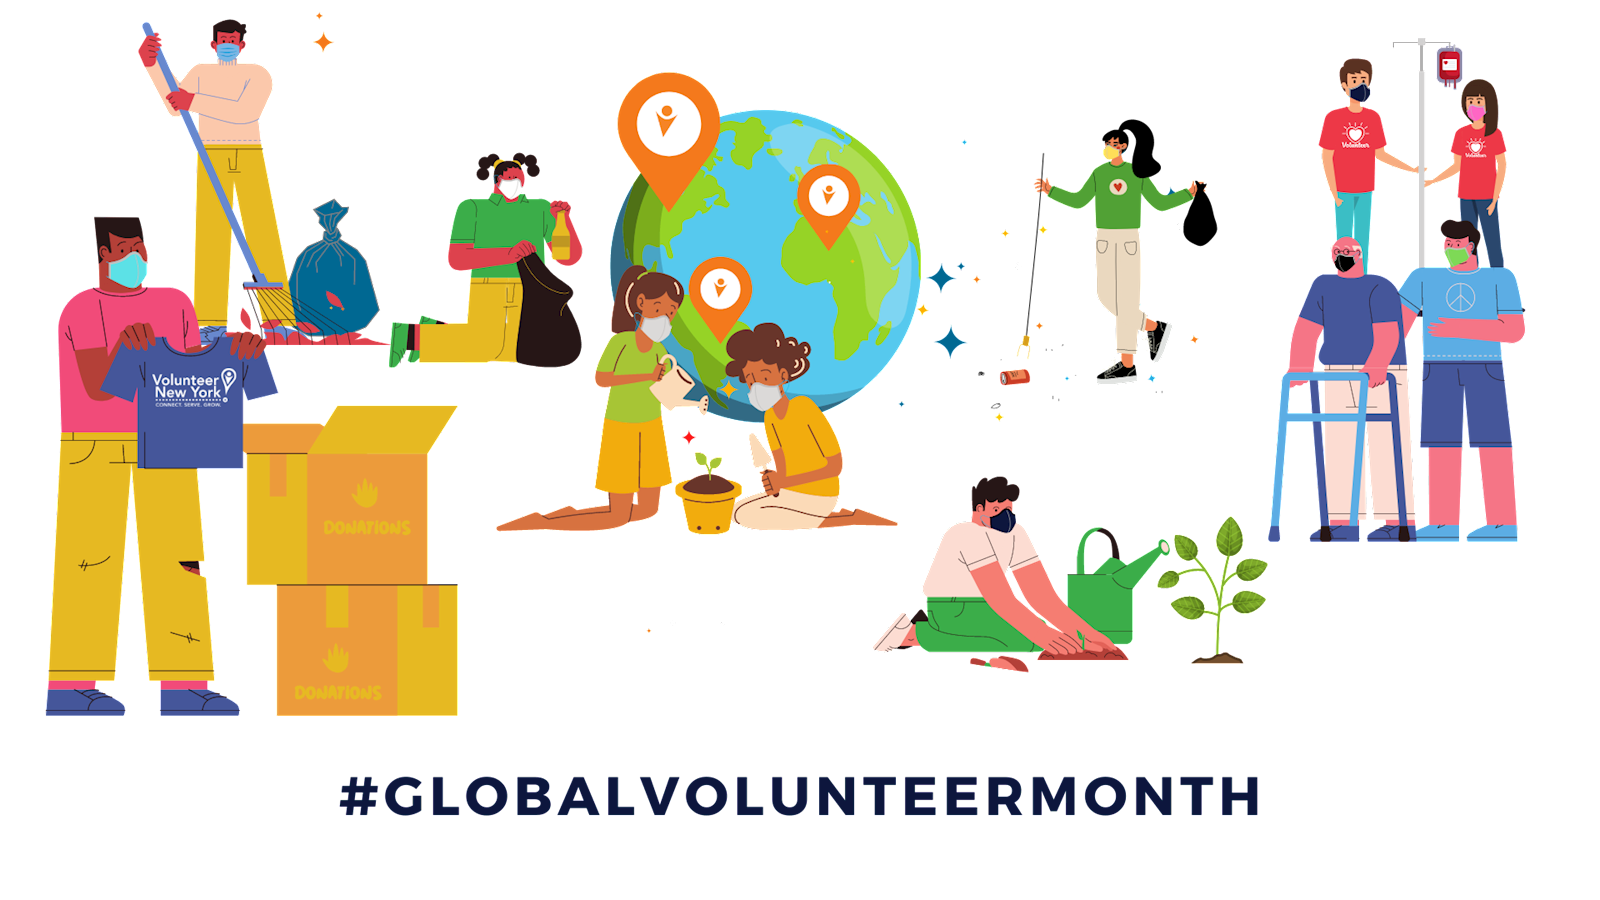 Volunteer New York! Global Volunteer Month